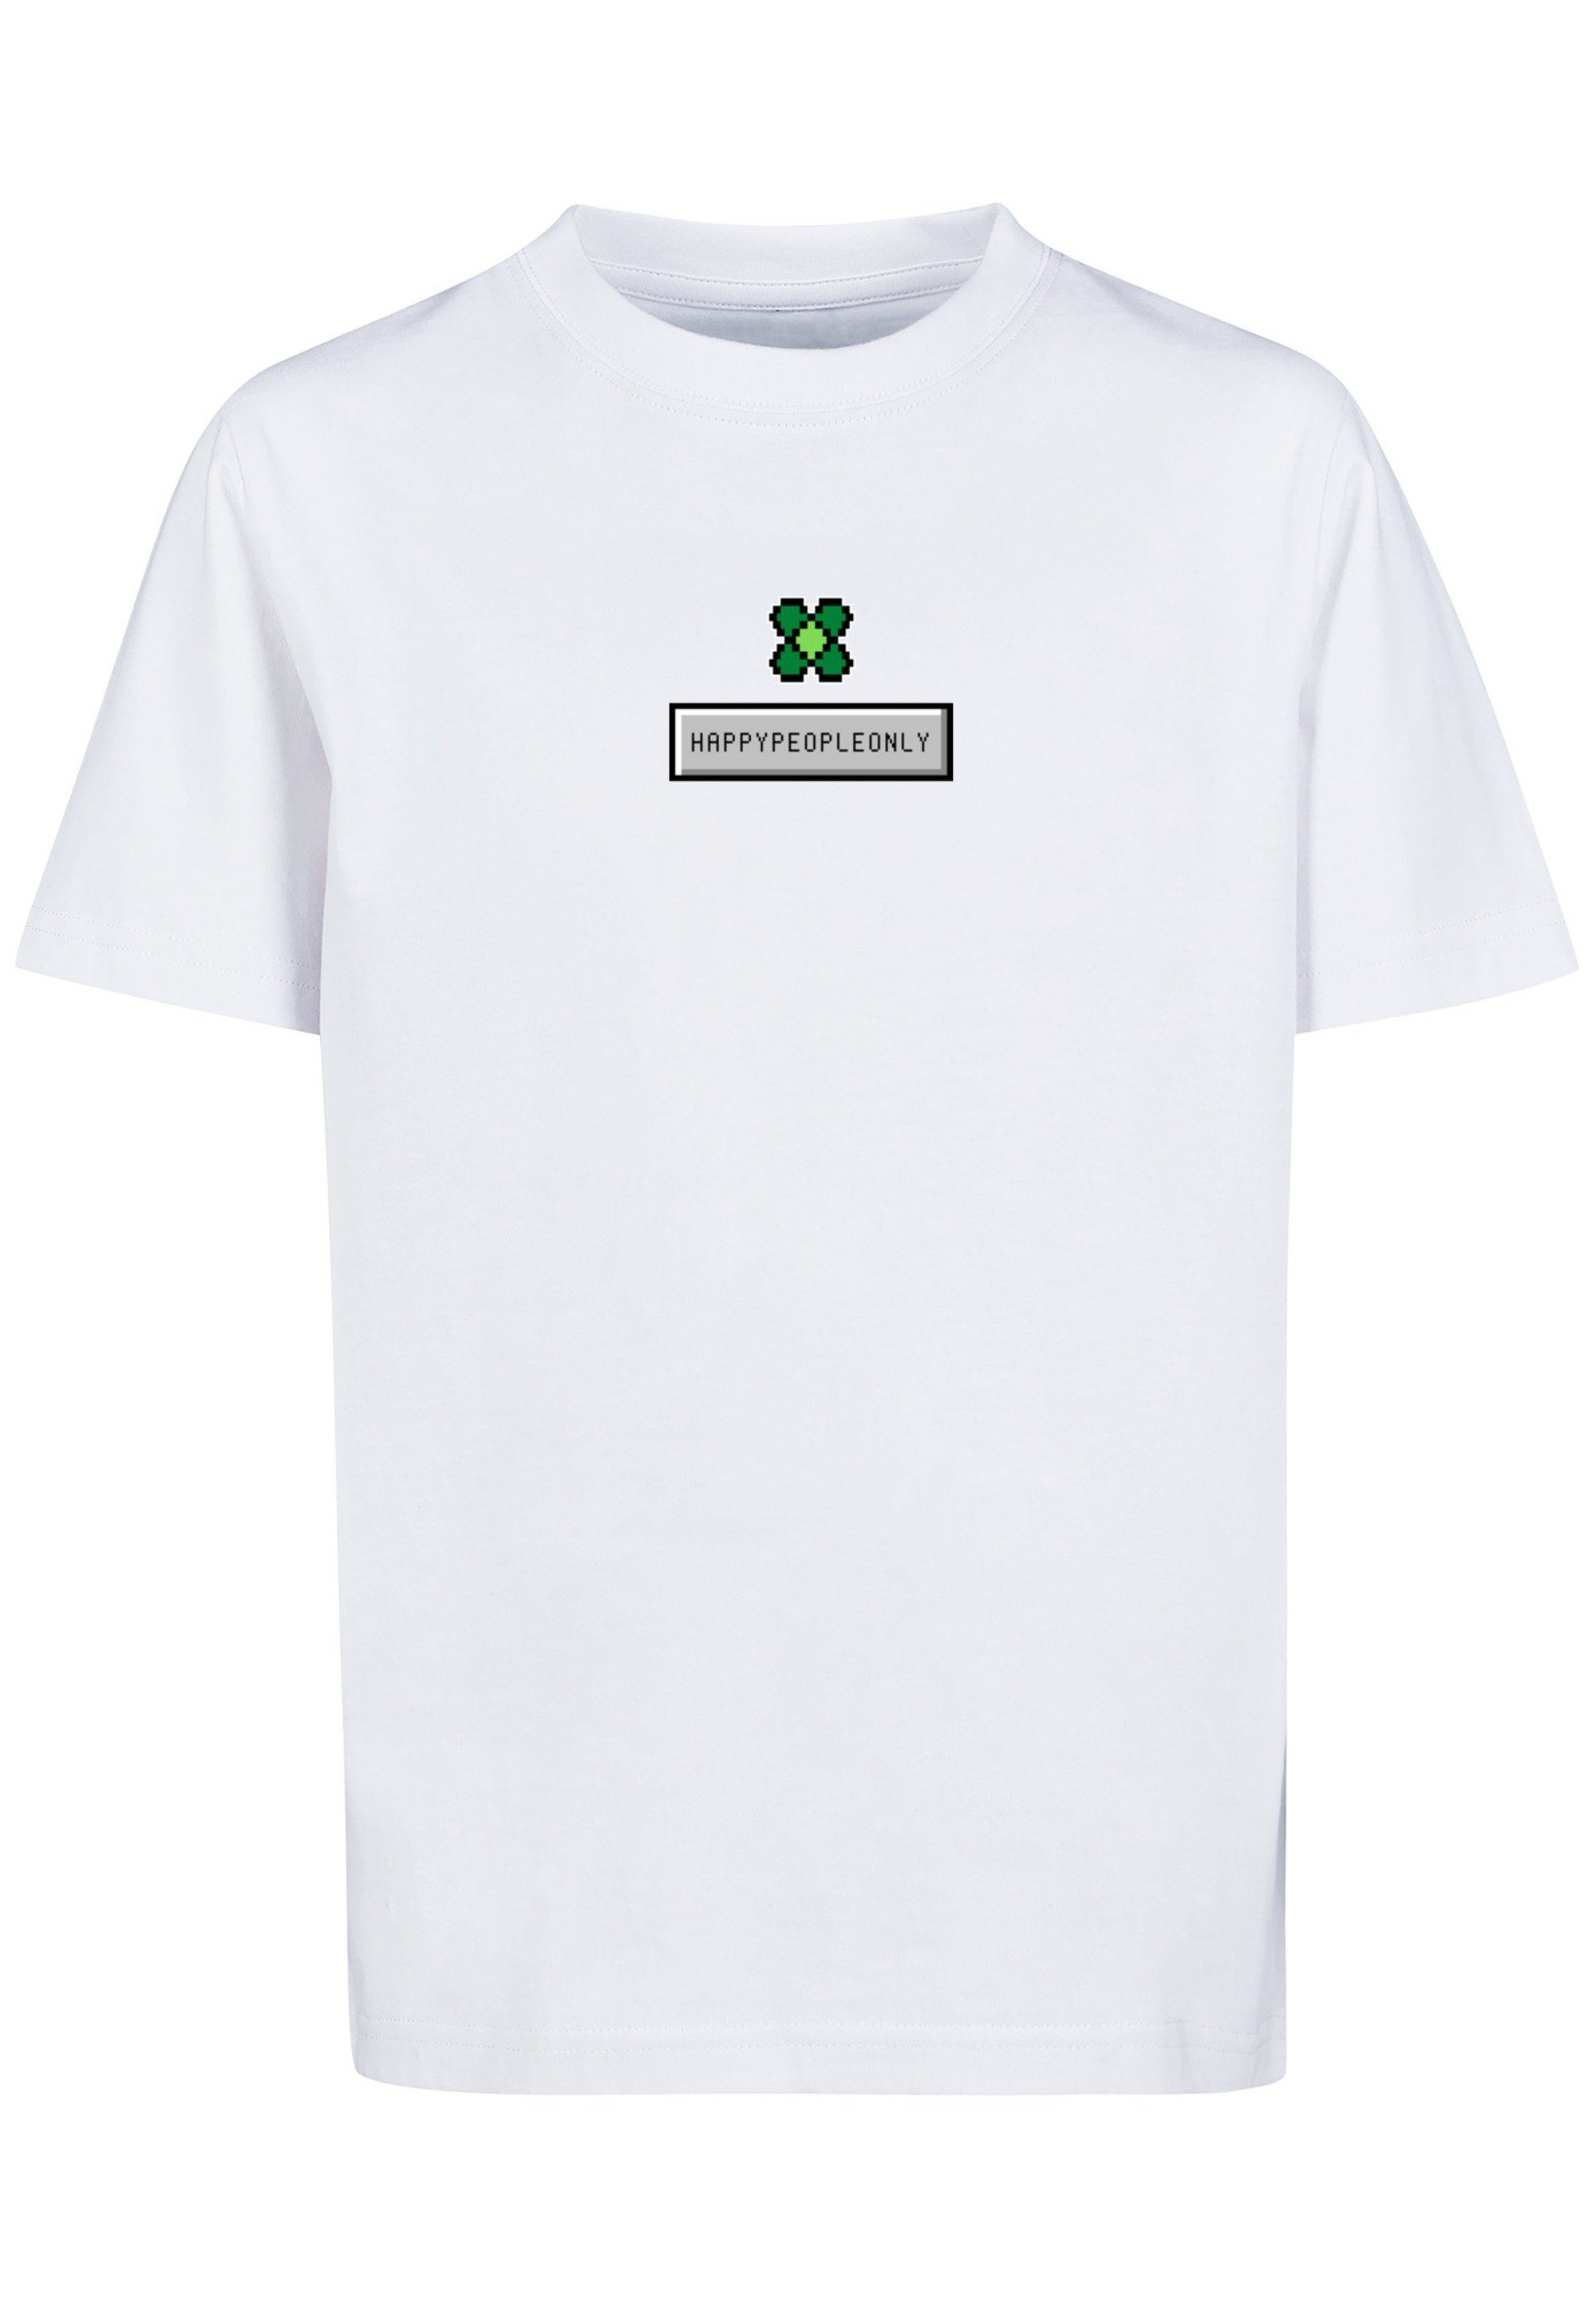 Kleeblatt Print New Silvester T-Shirt Year Pixel F4NT4STIC Happy weiß